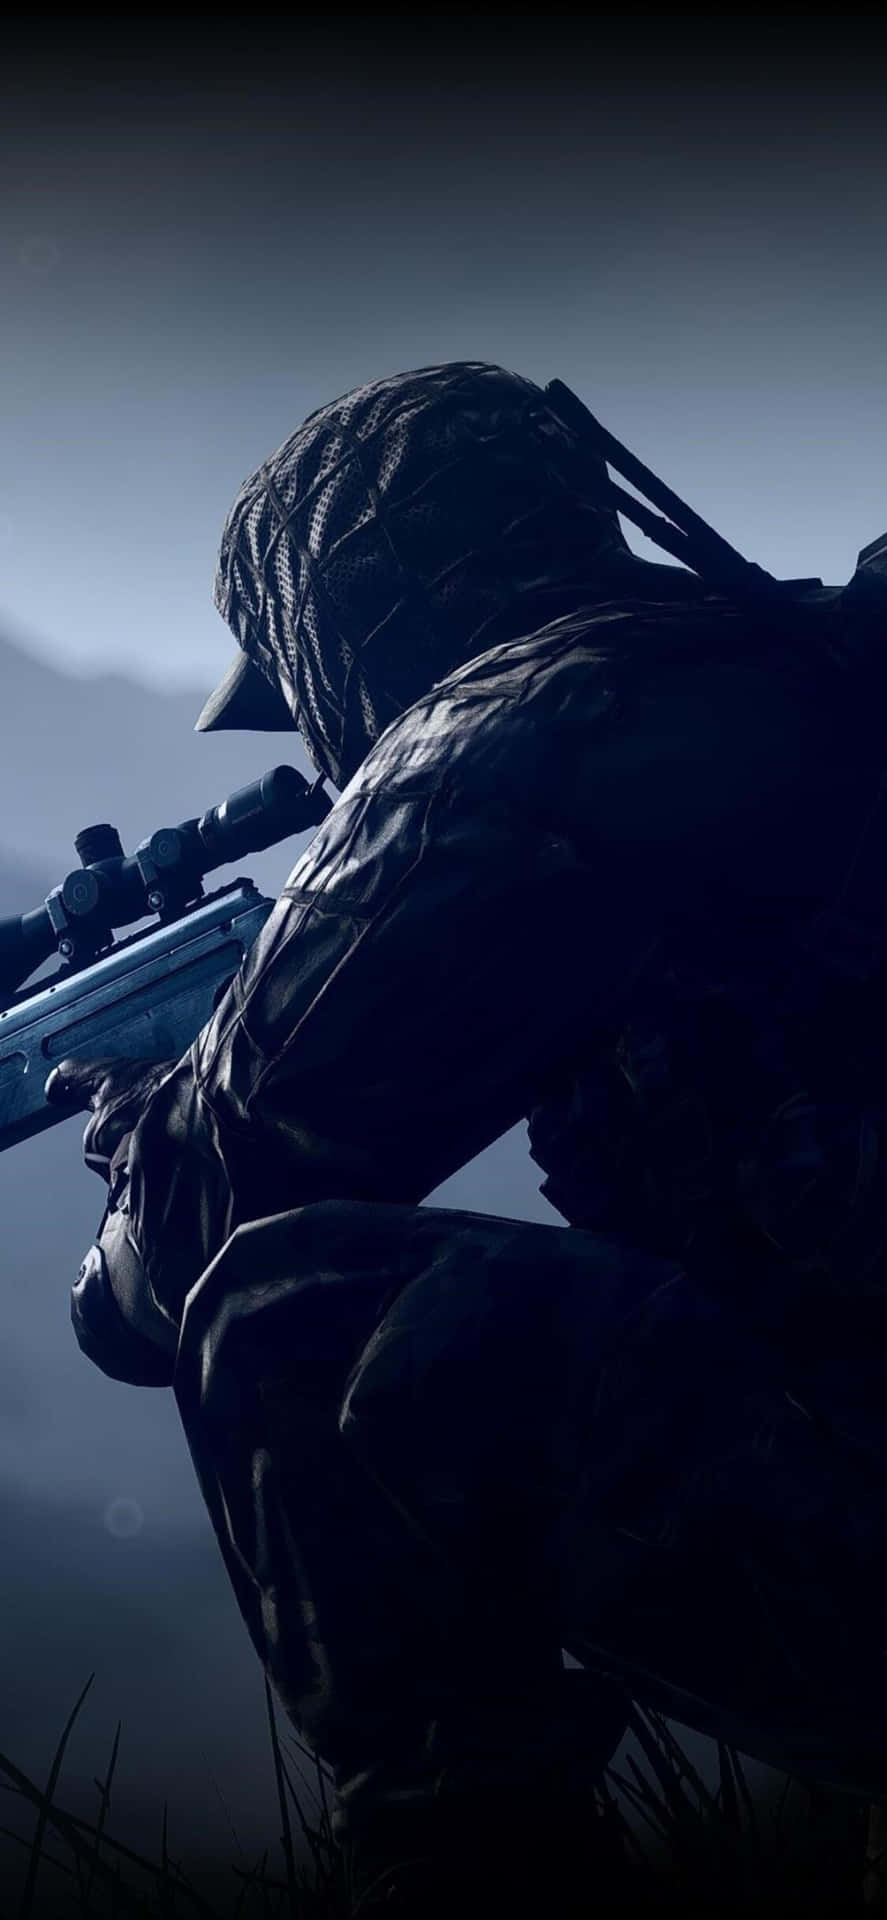 Combatticontro I Tuoi Avversari Con Stile Con Iphone Xs Max Battlefield 4